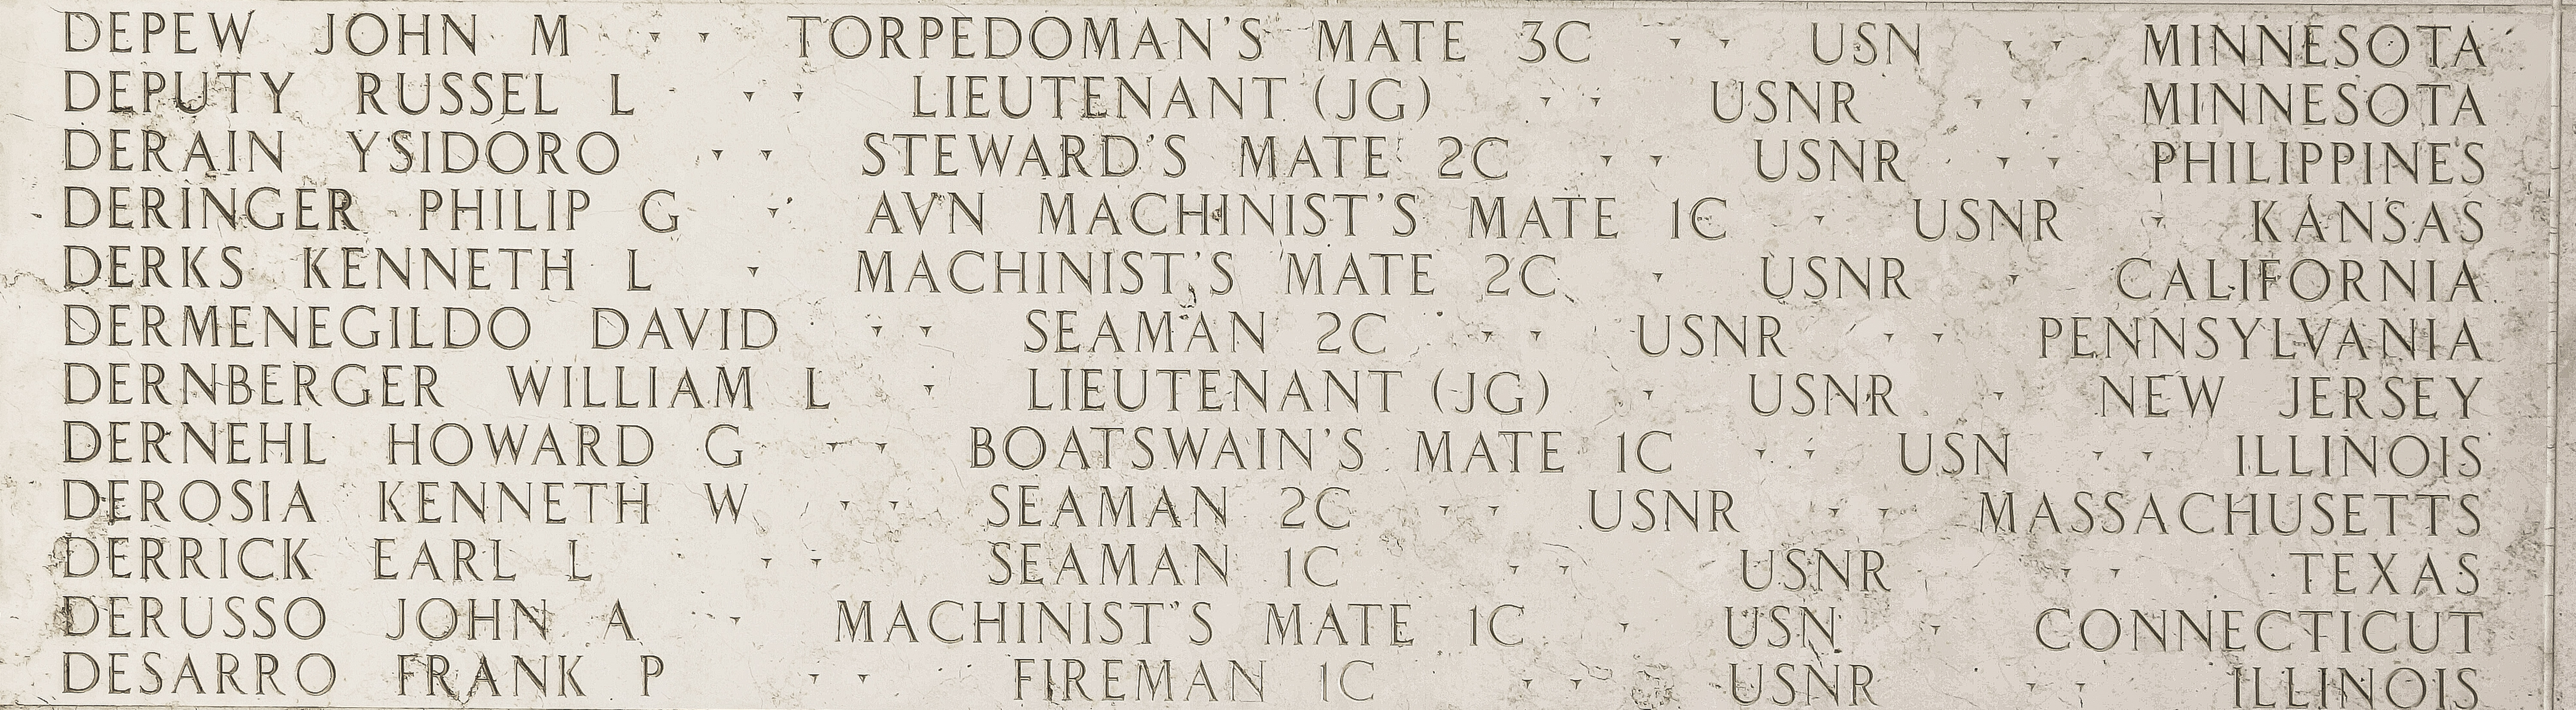 John M. Depew, Torpedoman's Mate Third Class